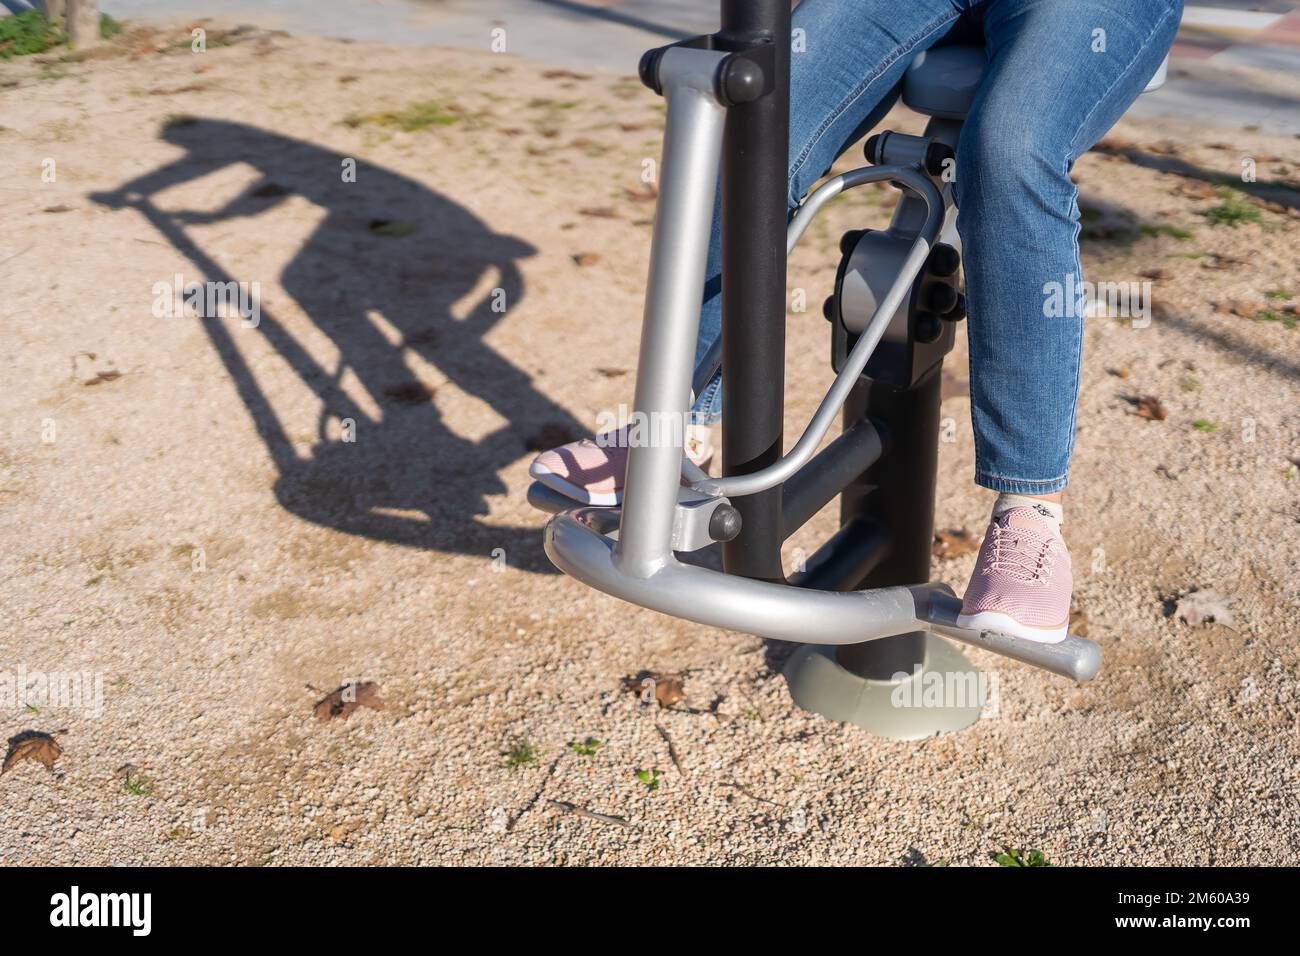 Details von Frauenbeinen, die in einem öffentlichen Apparat in einem Stadtpark Gymnastik machen. Stockfoto